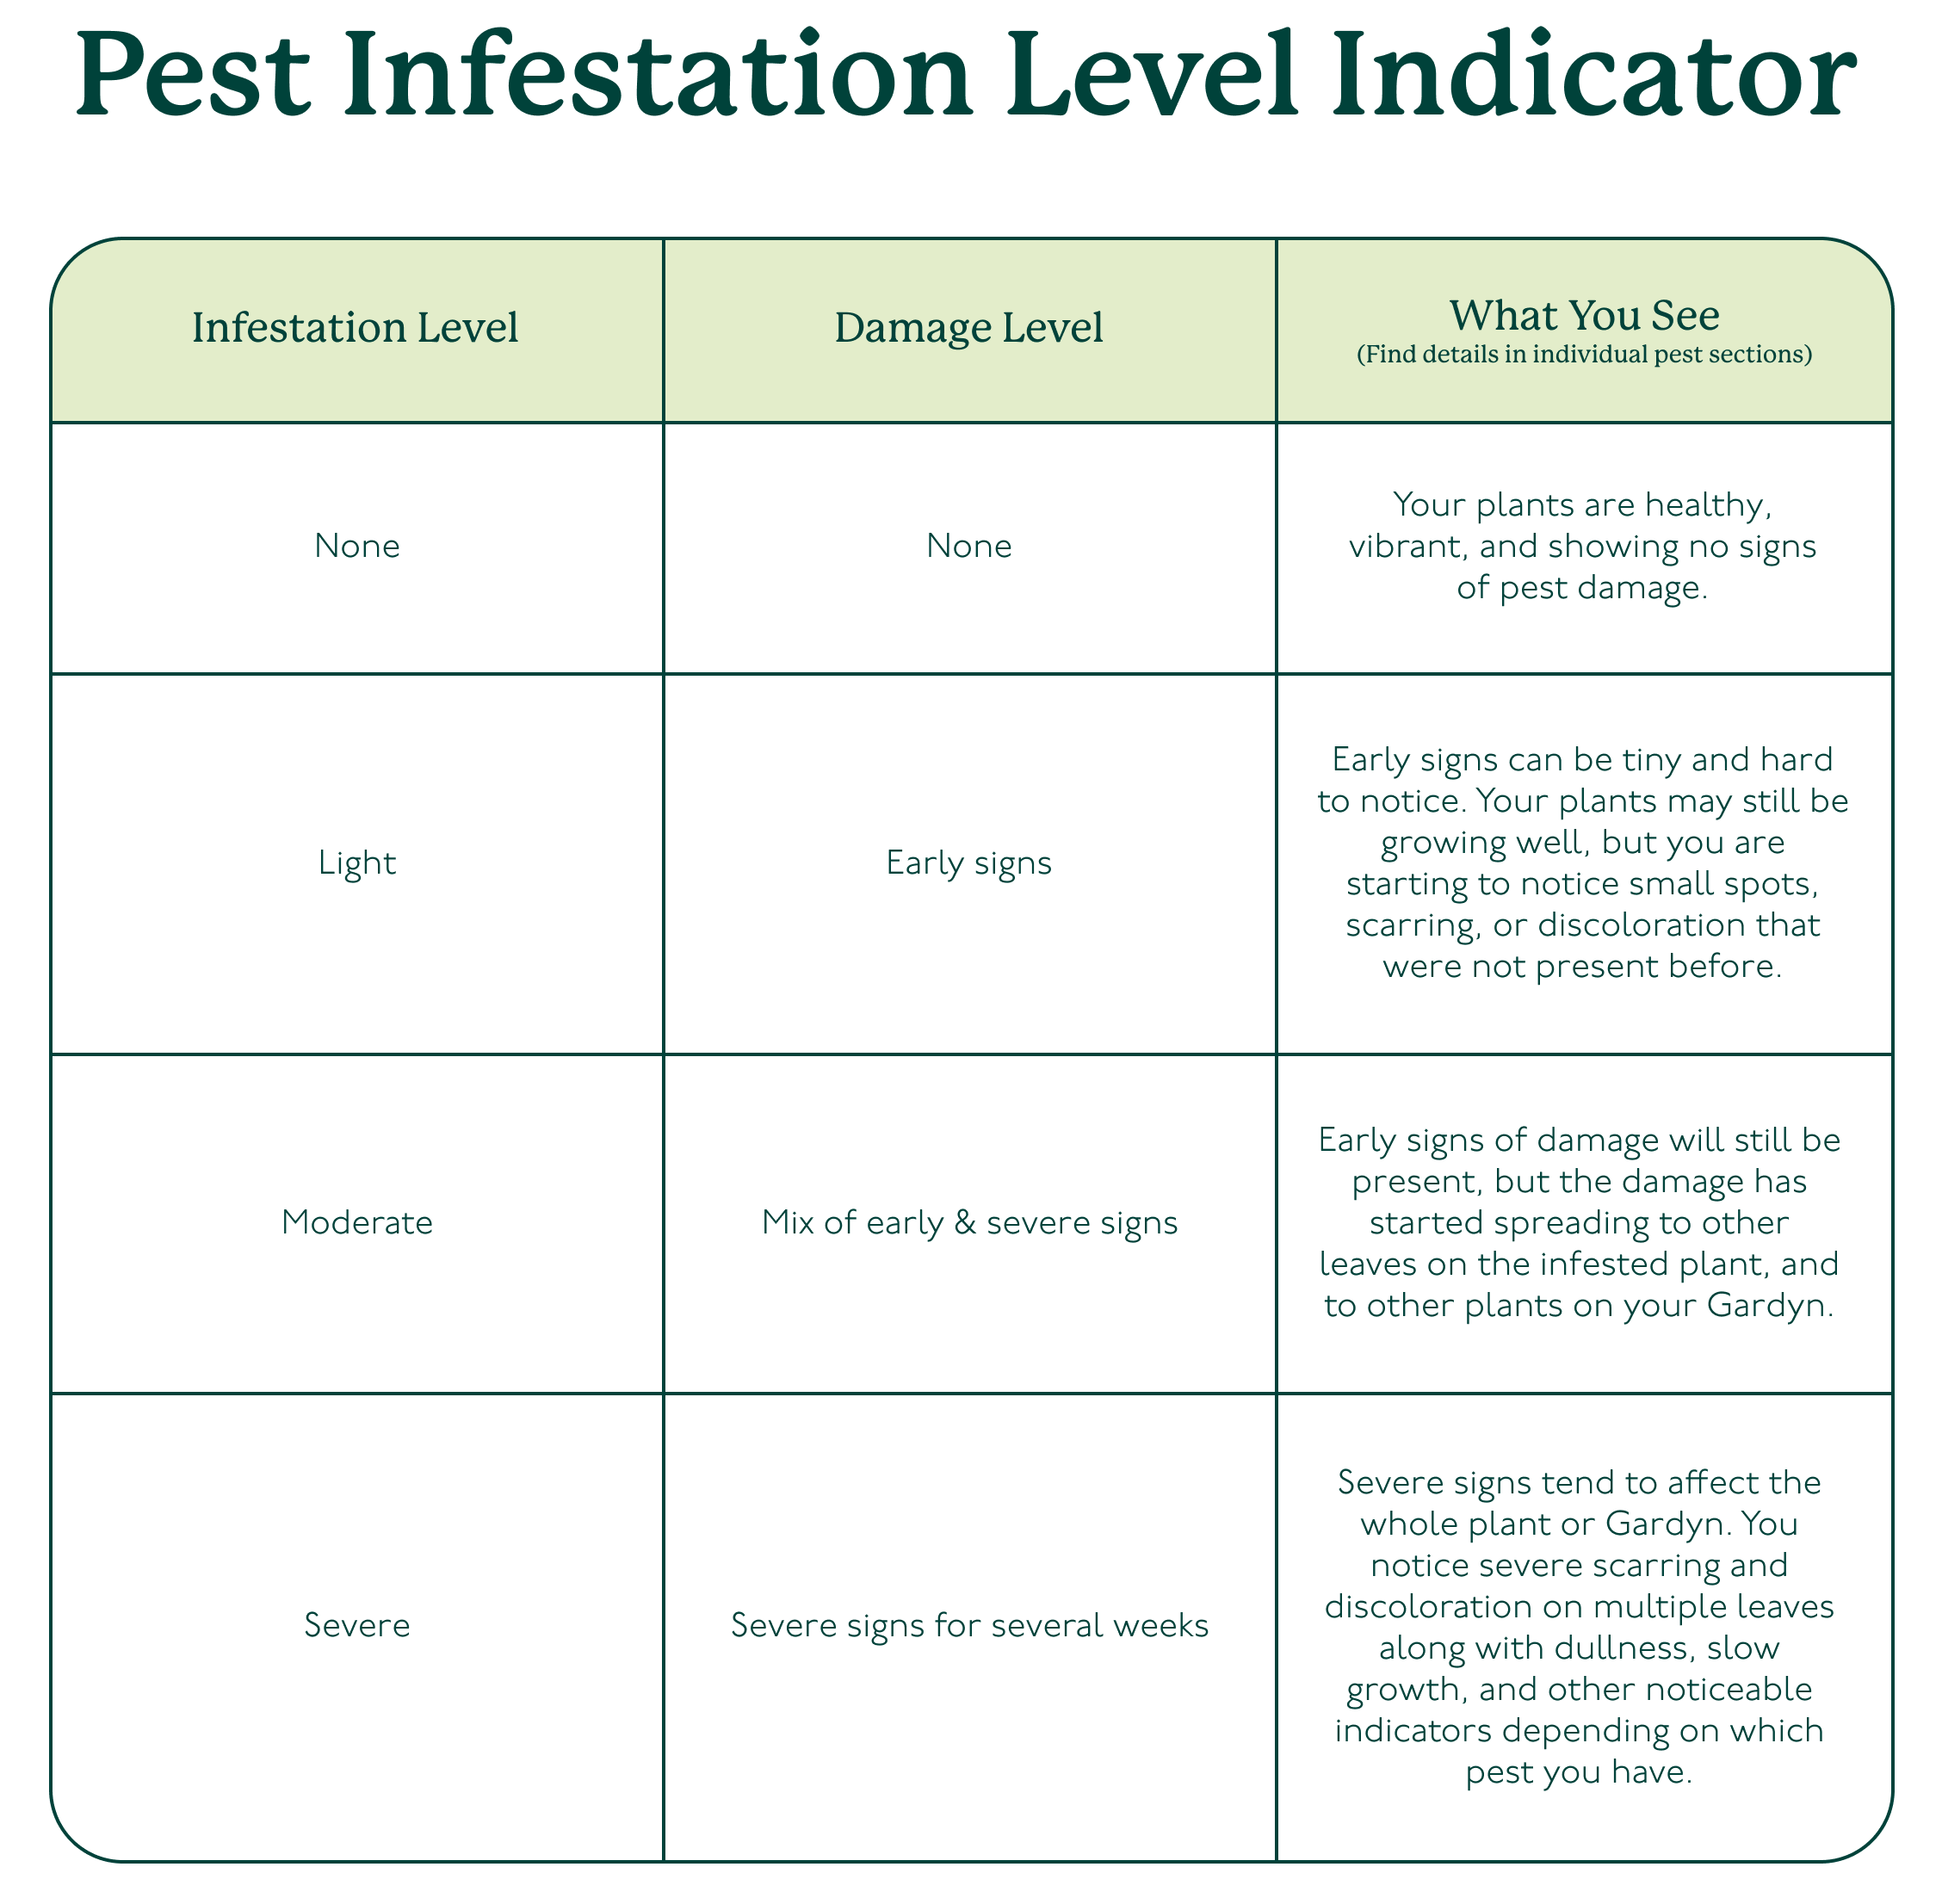 Pest_Infestation_Level_Indicator.png